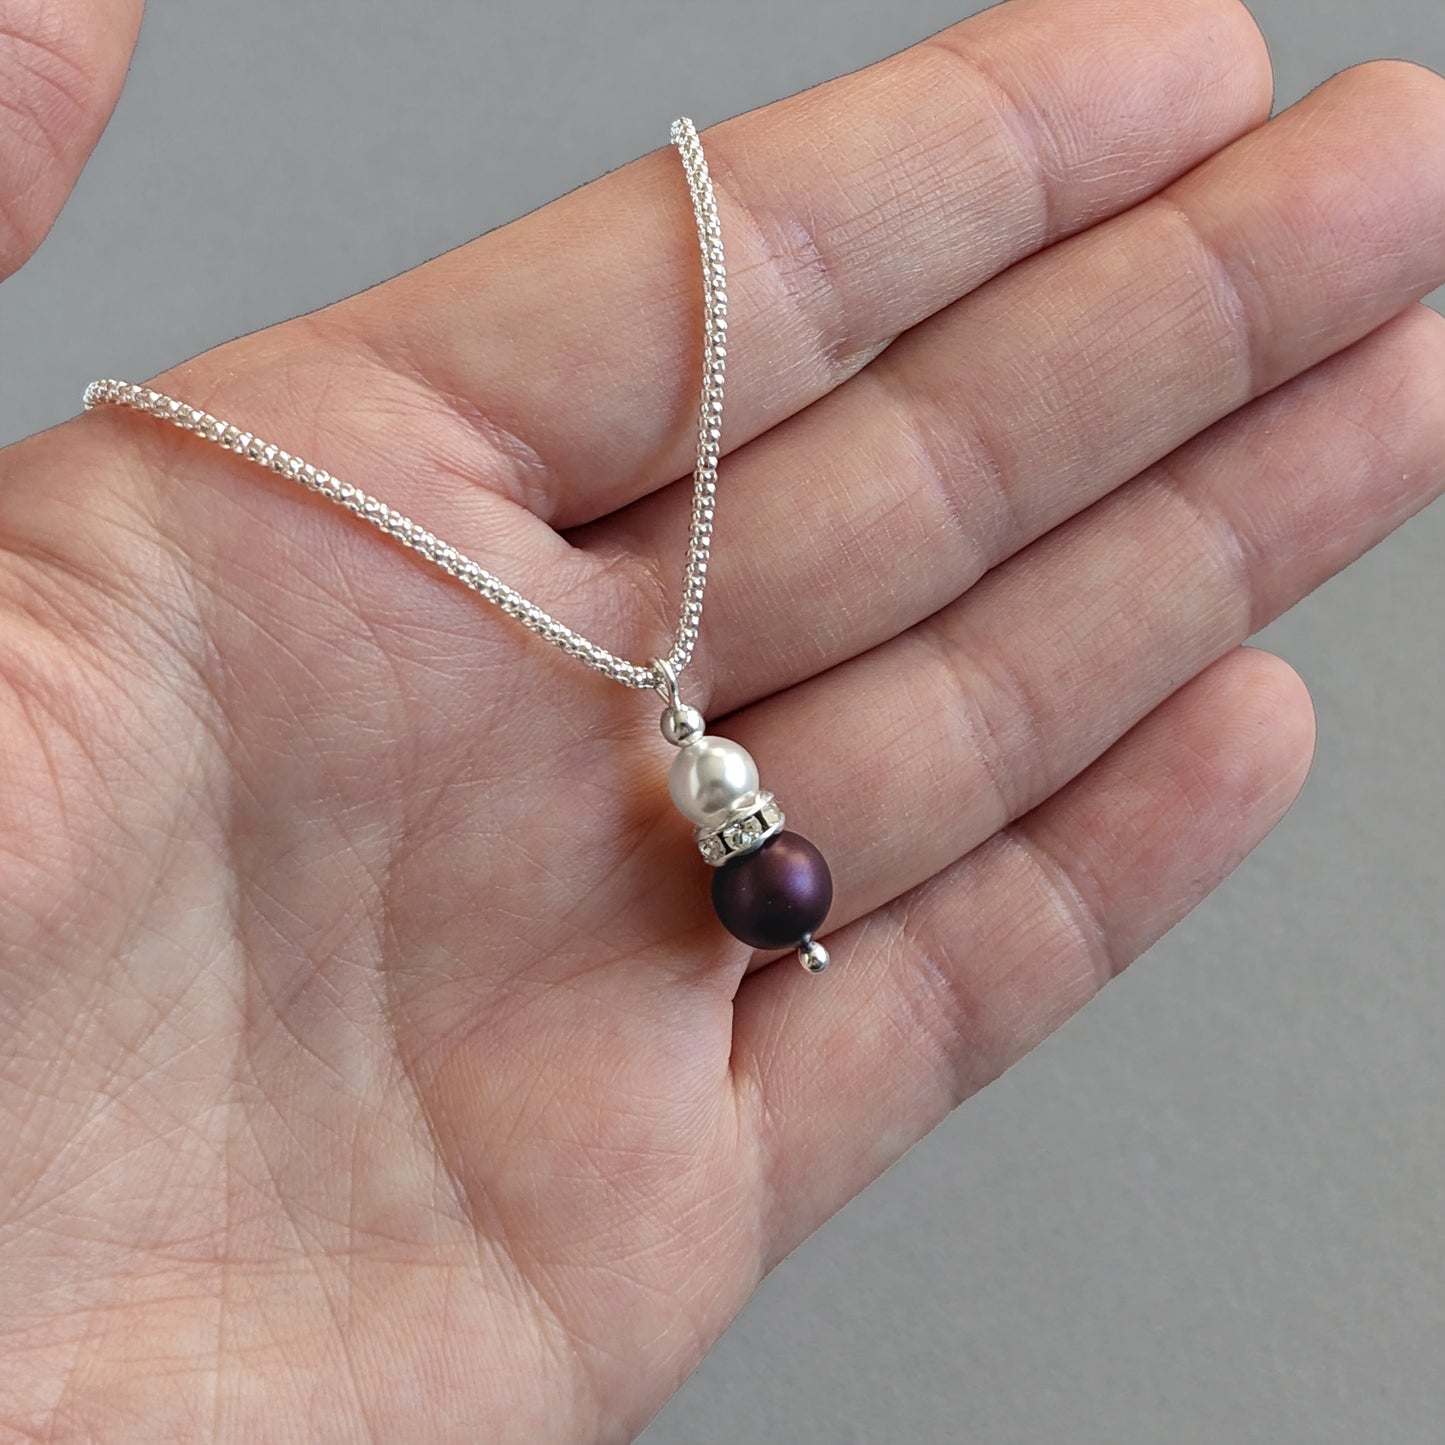 Aubergine purple pendant necklace